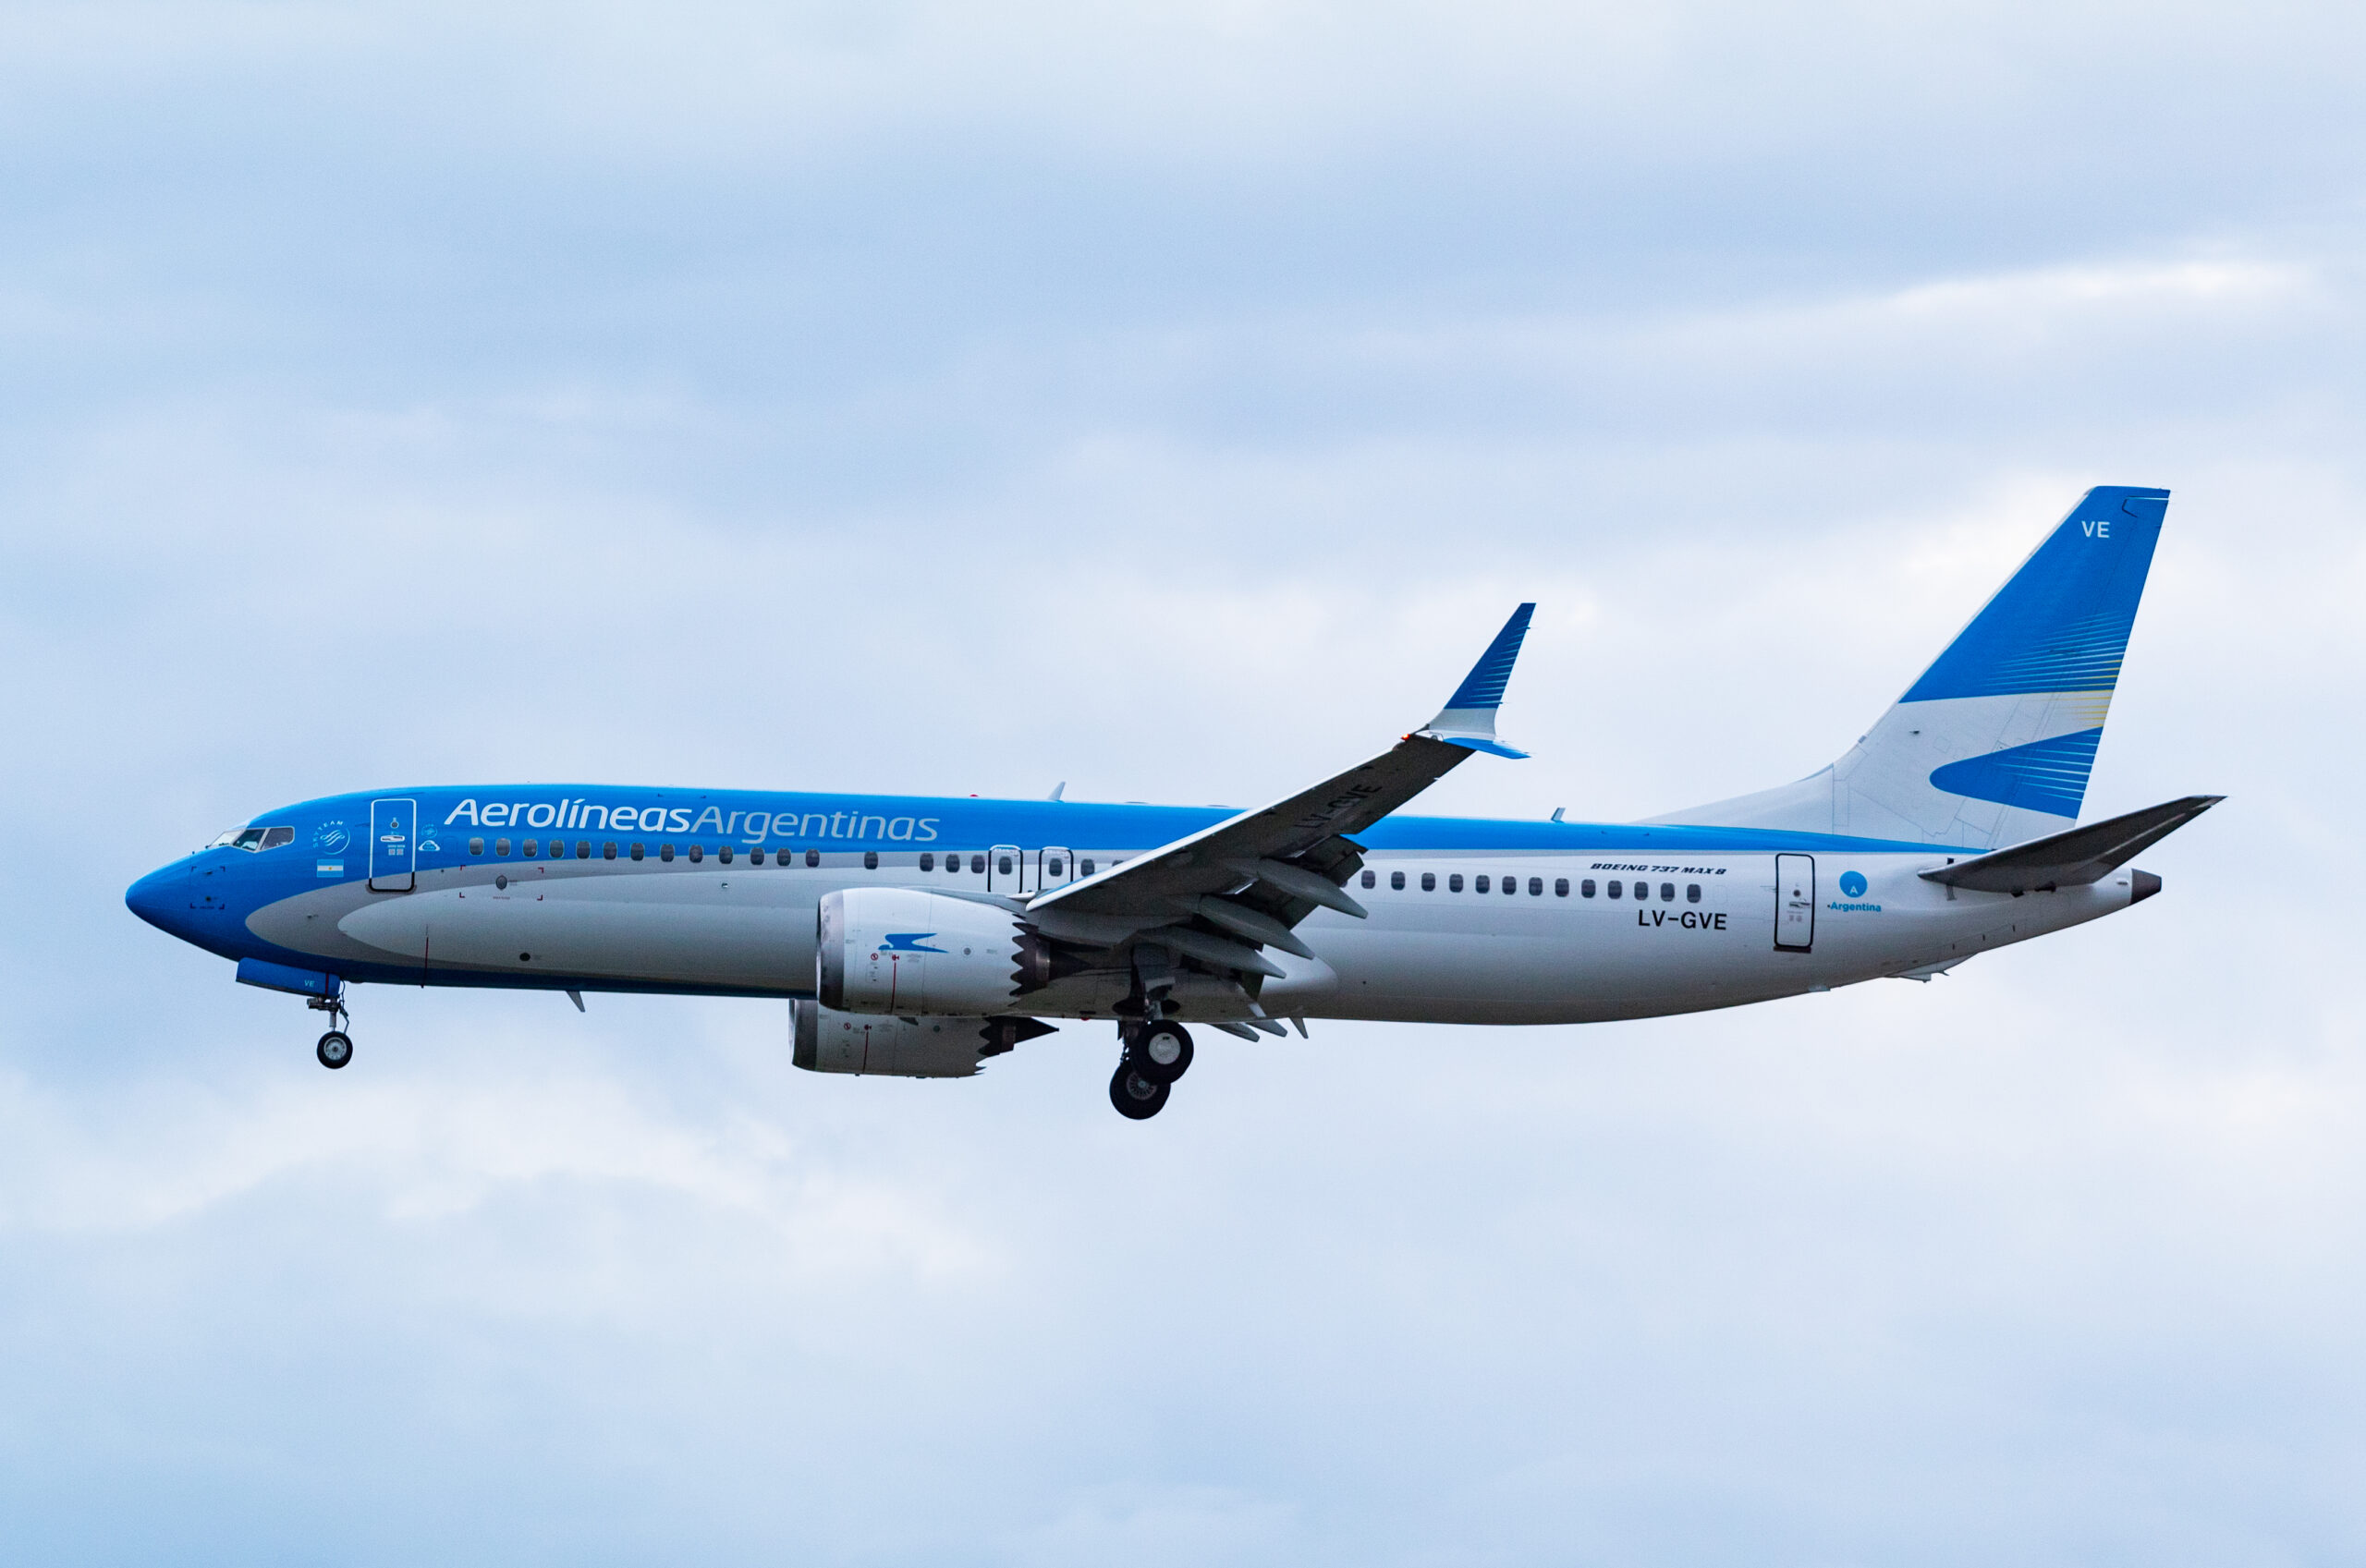 LV-GVE - Boeing 737 MAX 8 - Aerolineas Argentinas - Blog do Spotter